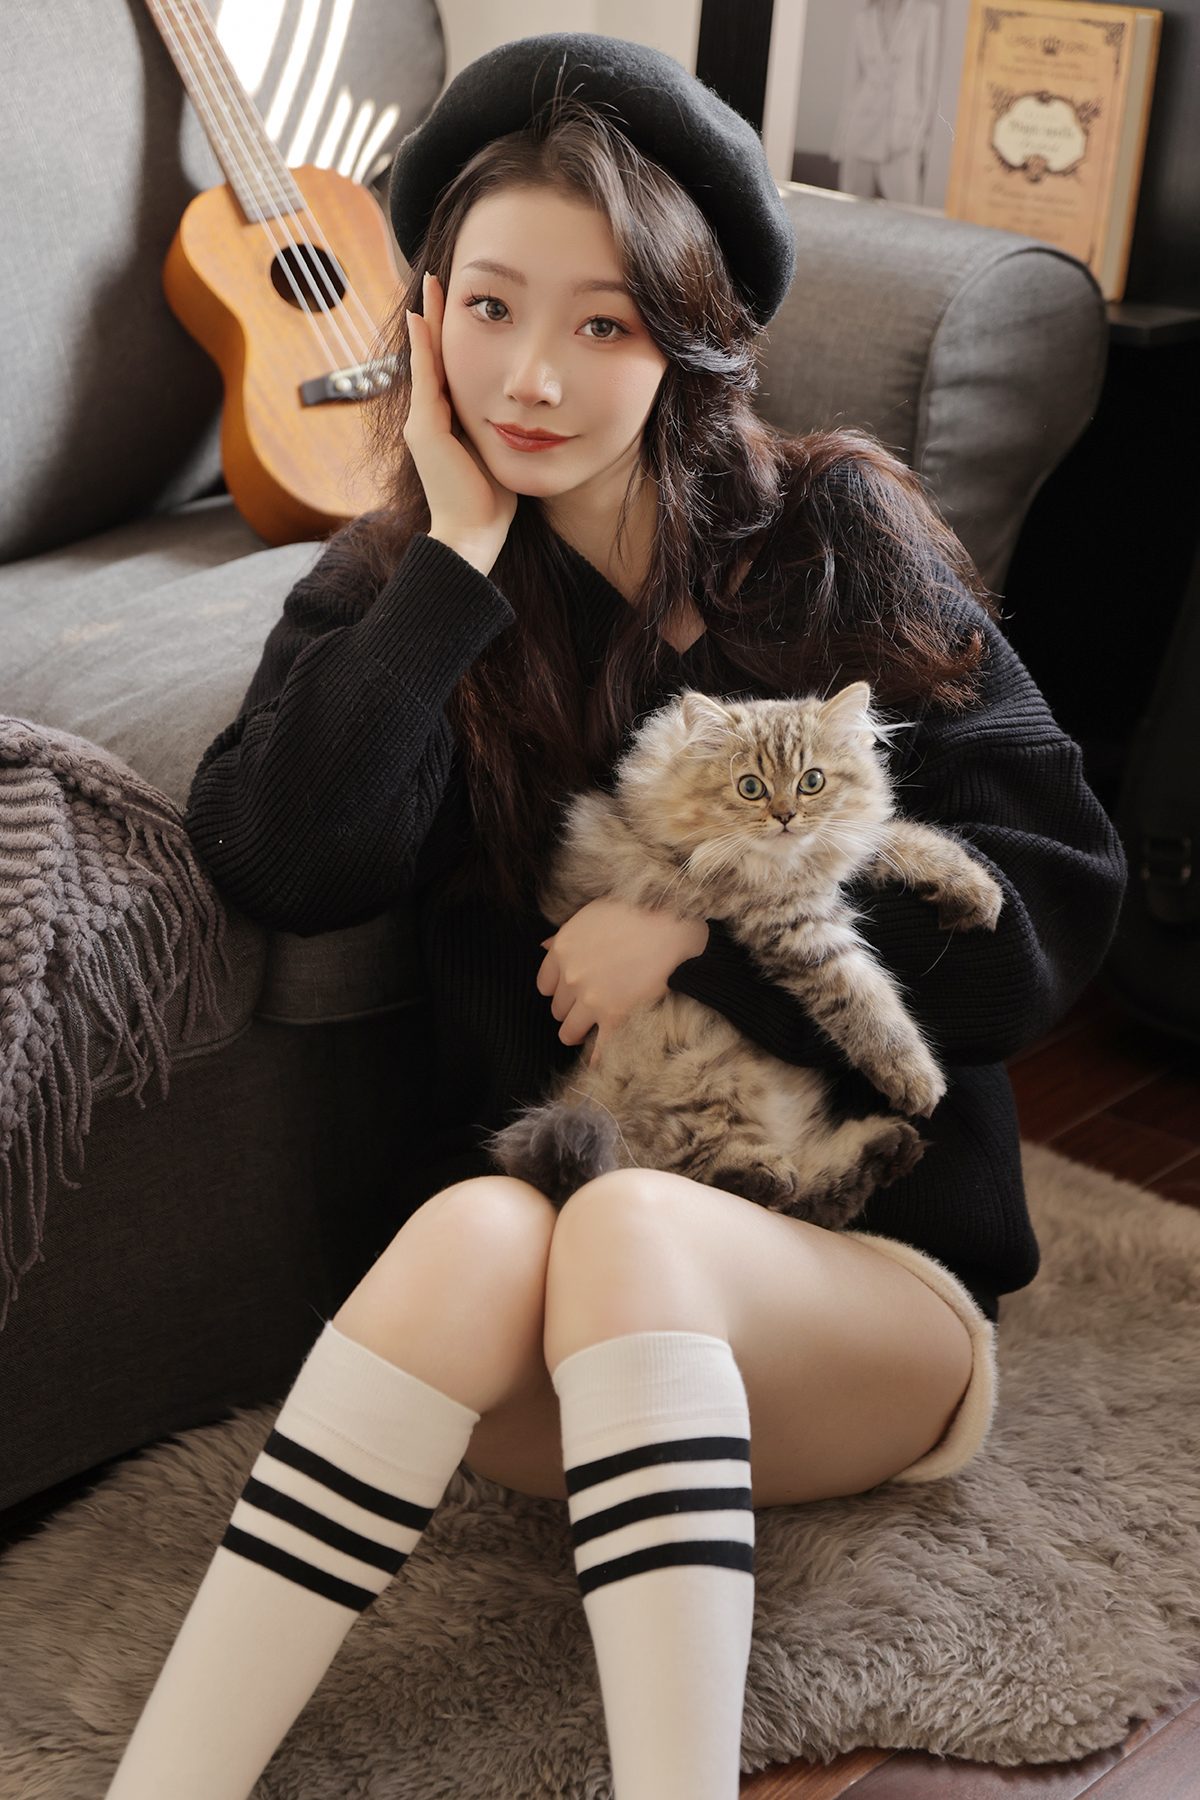 Model Asian Knee High Socks Socks Cats Women Brunette Black Sweater Striped Socks Sitting On The Flo 1200x1800